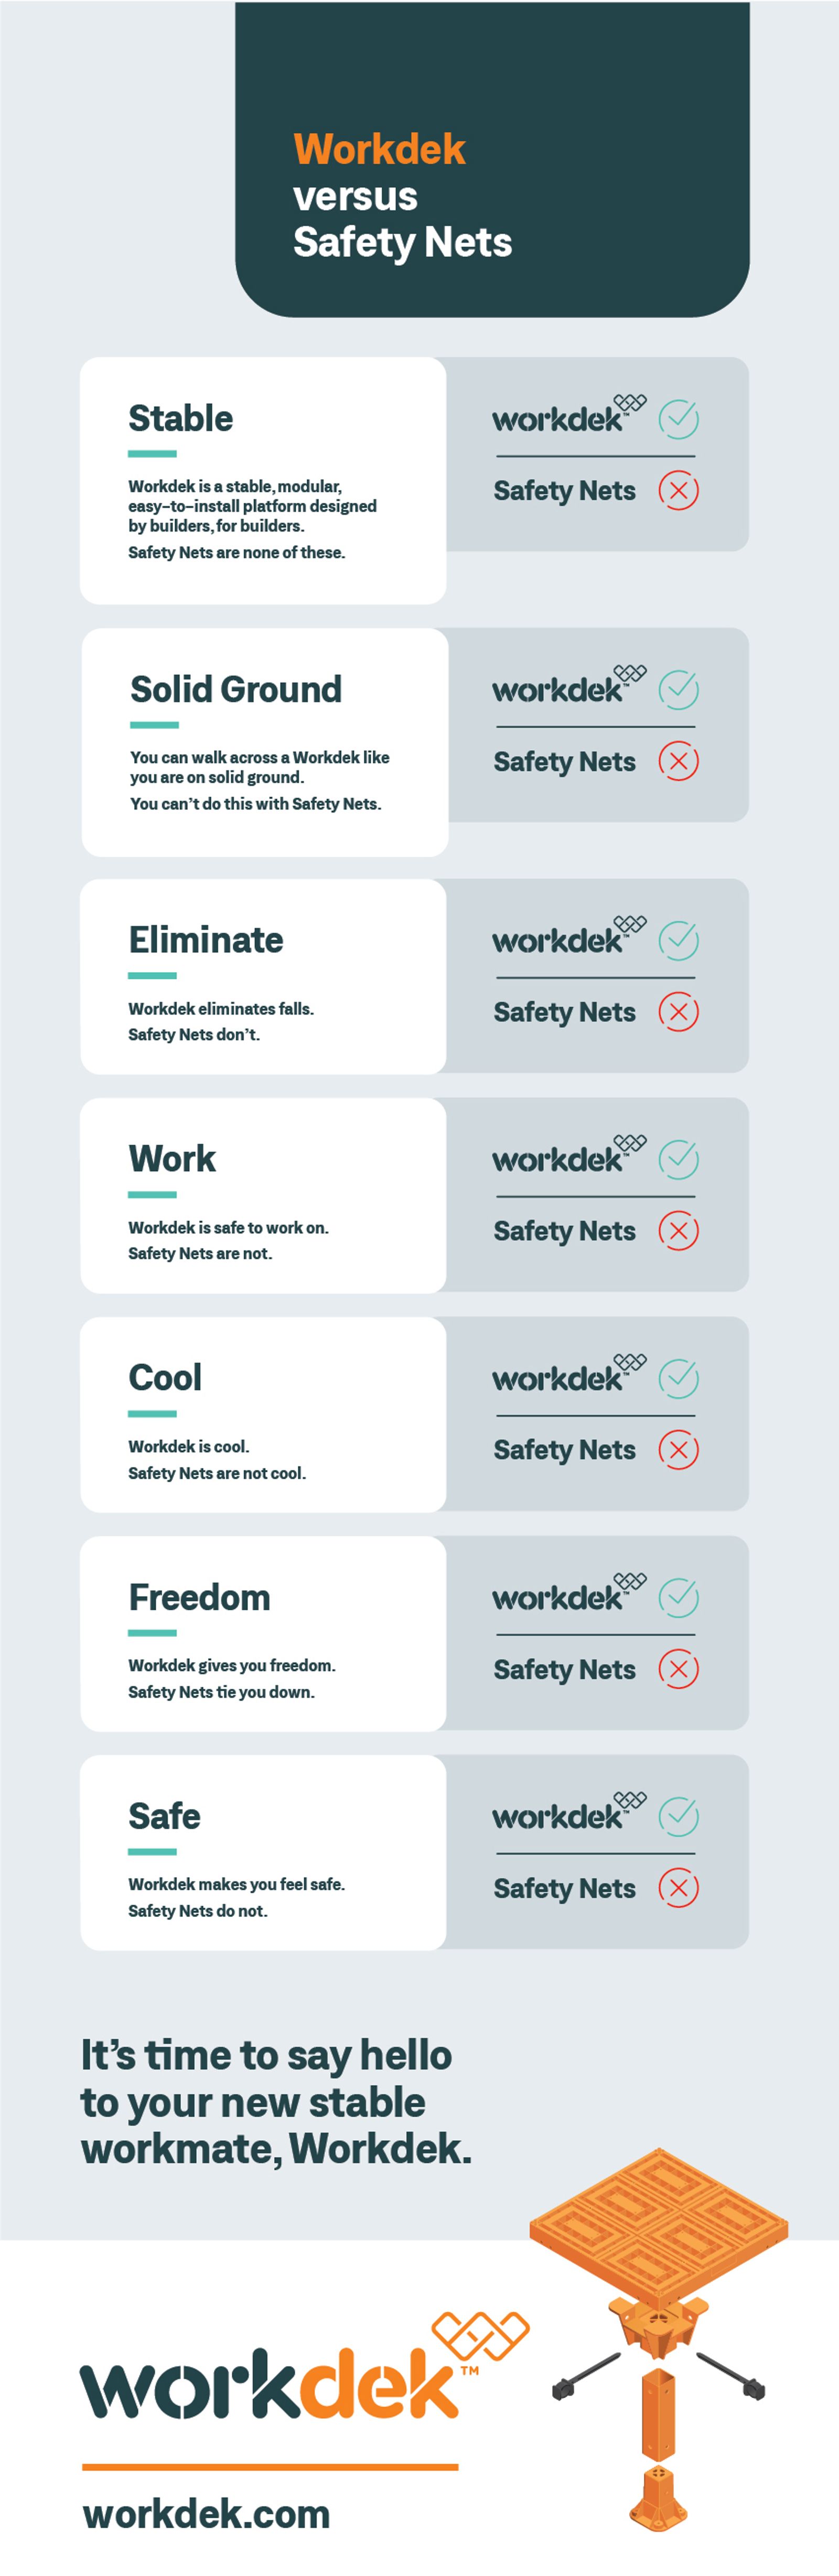 Workdek vs Safety Nets